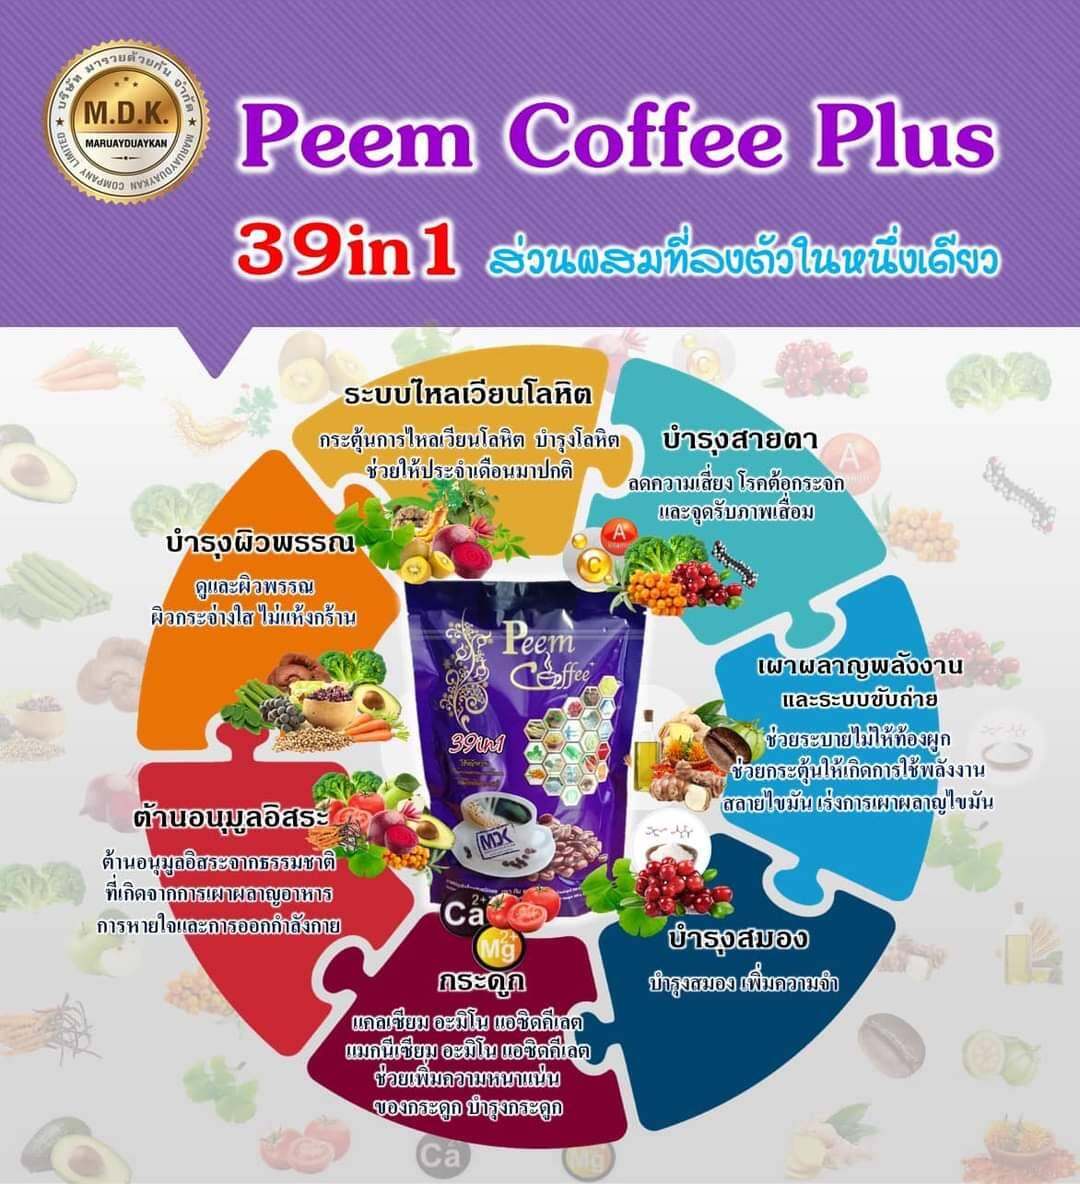 ข้อมูลเกี่ยวกับ ภีมคอฟฟี่10 ห่อ Peem Coffee Plus 39in1**เก็บคูปองก่อนสั่ง*ผลิตล่าสุด(ก.พ 66) แท้จากบริษัท